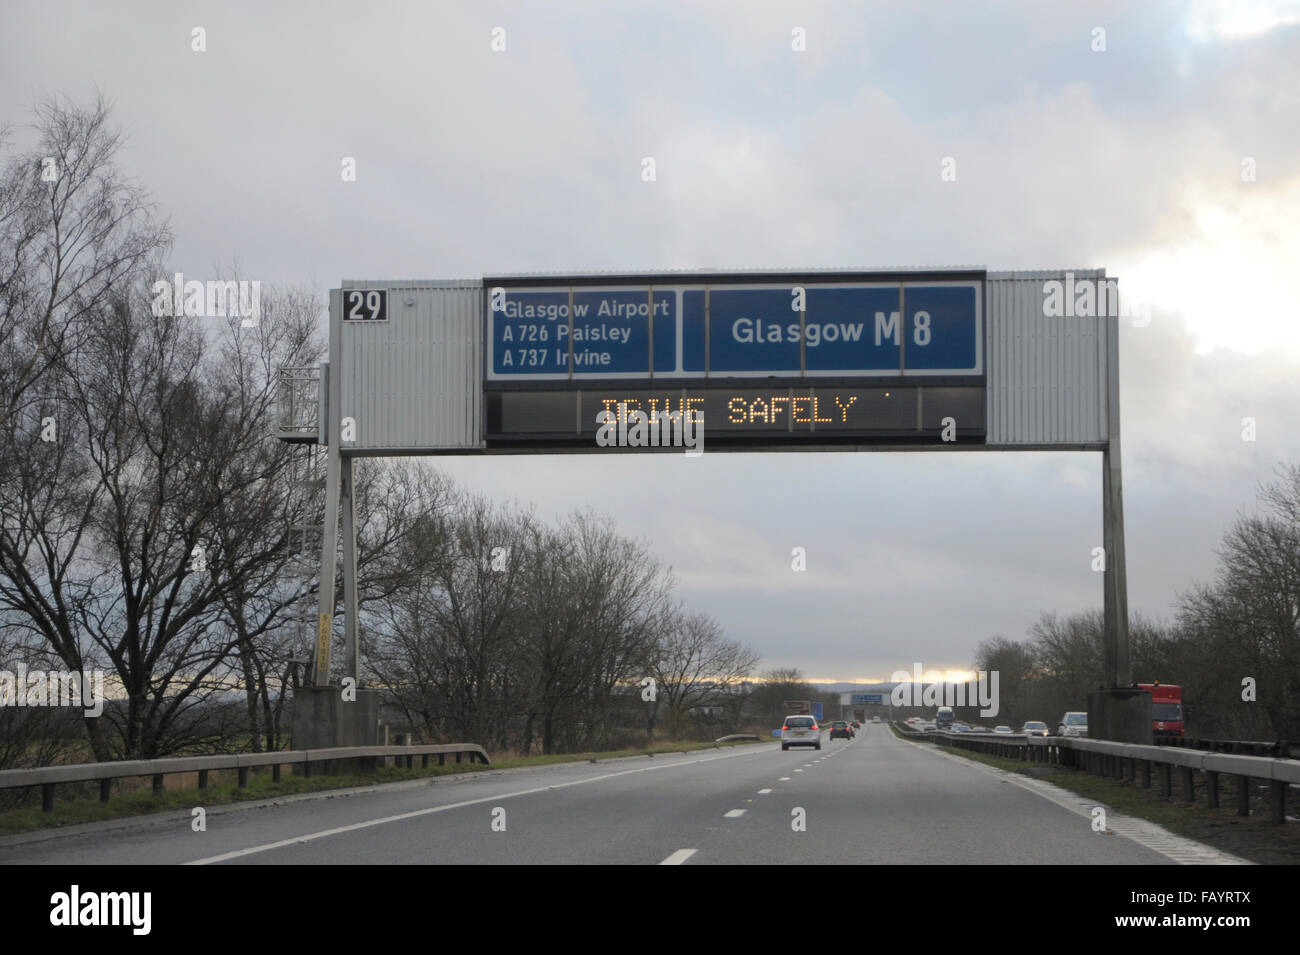 Obenliegende Gantry elektronische Warnzeichen auf M8 Glasgow, Schottland. "Sicher fahren" "halten Windschutzscheibe klar" Stockfoto